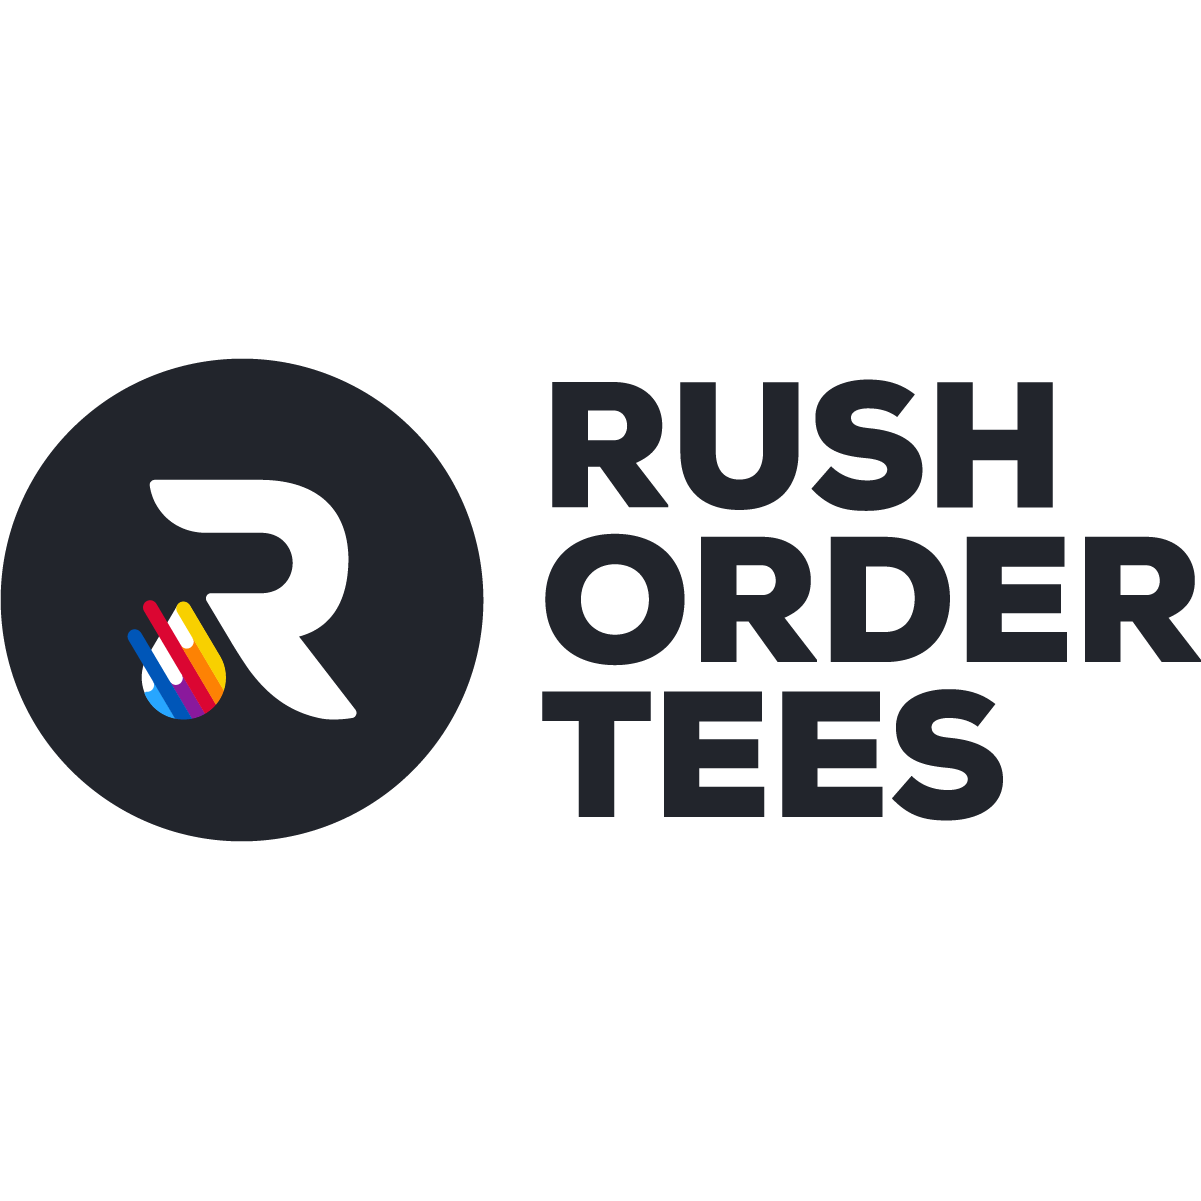 Rush order tees